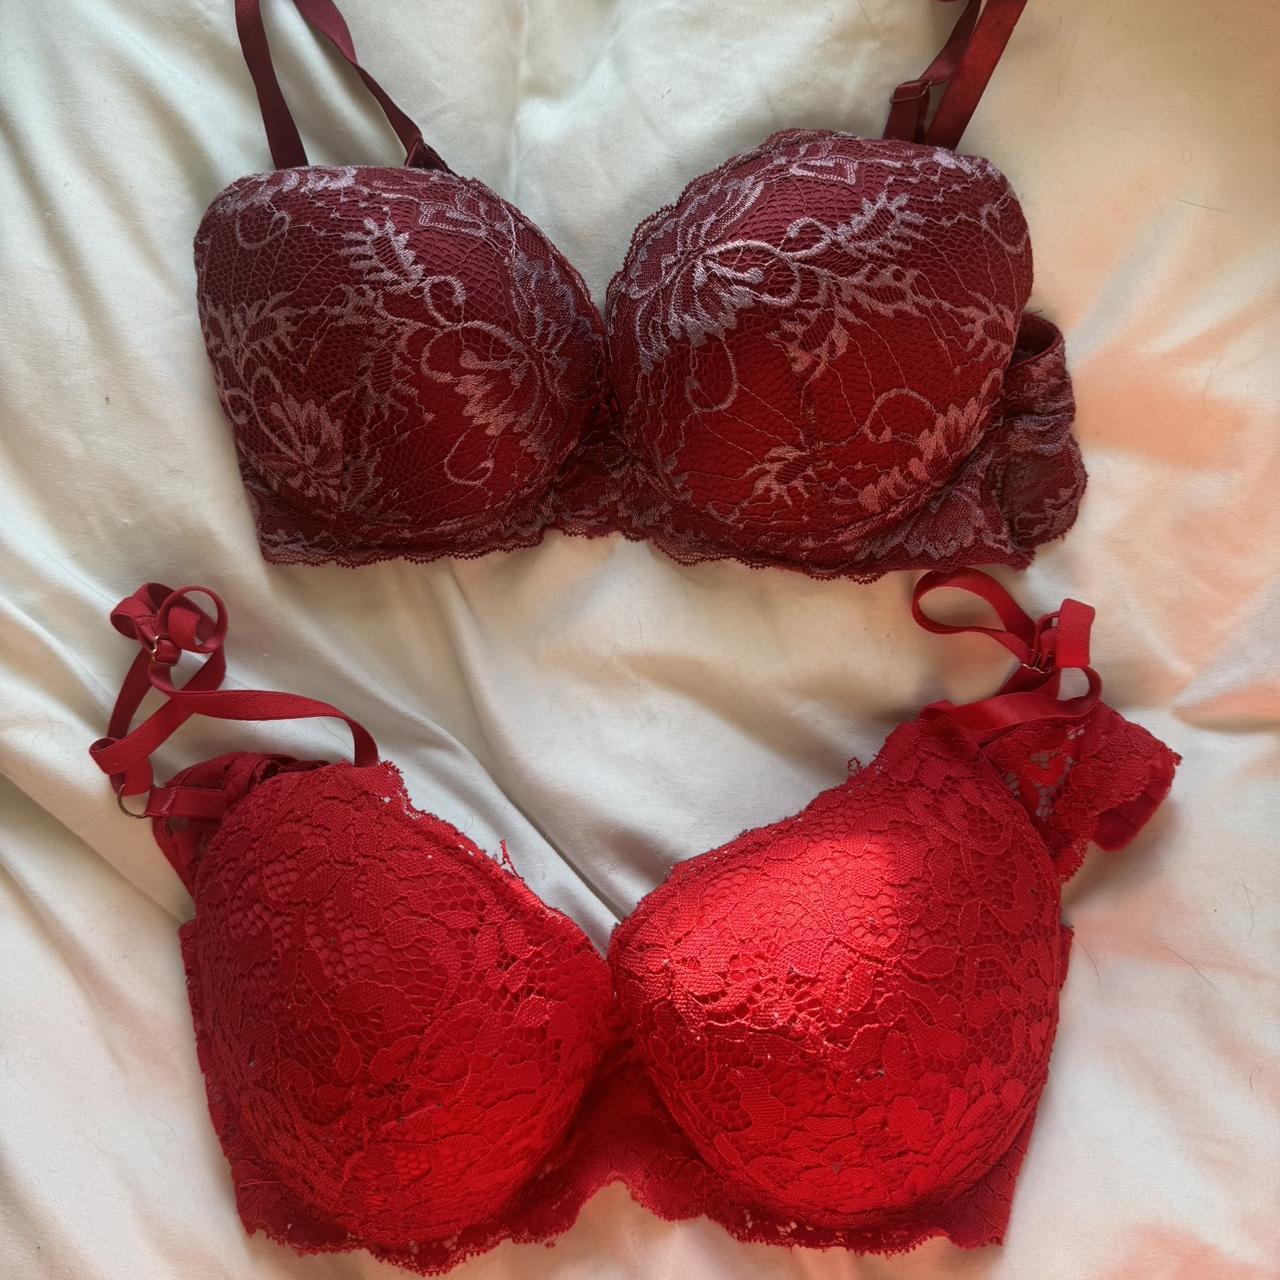 victoria secret red bra and underwear set brand new - Depop